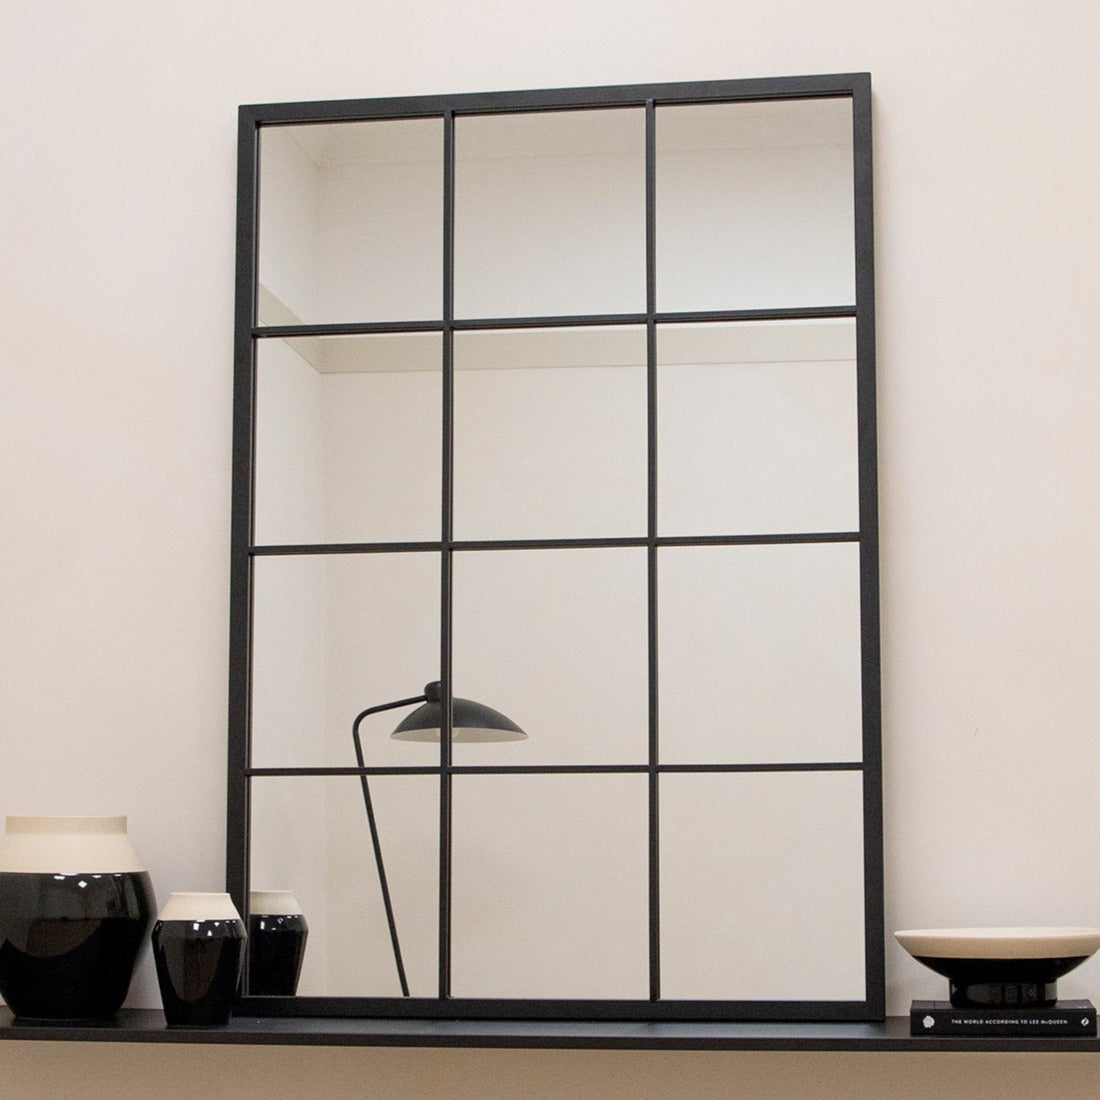 Large black industrial metal window mirror displayed on table